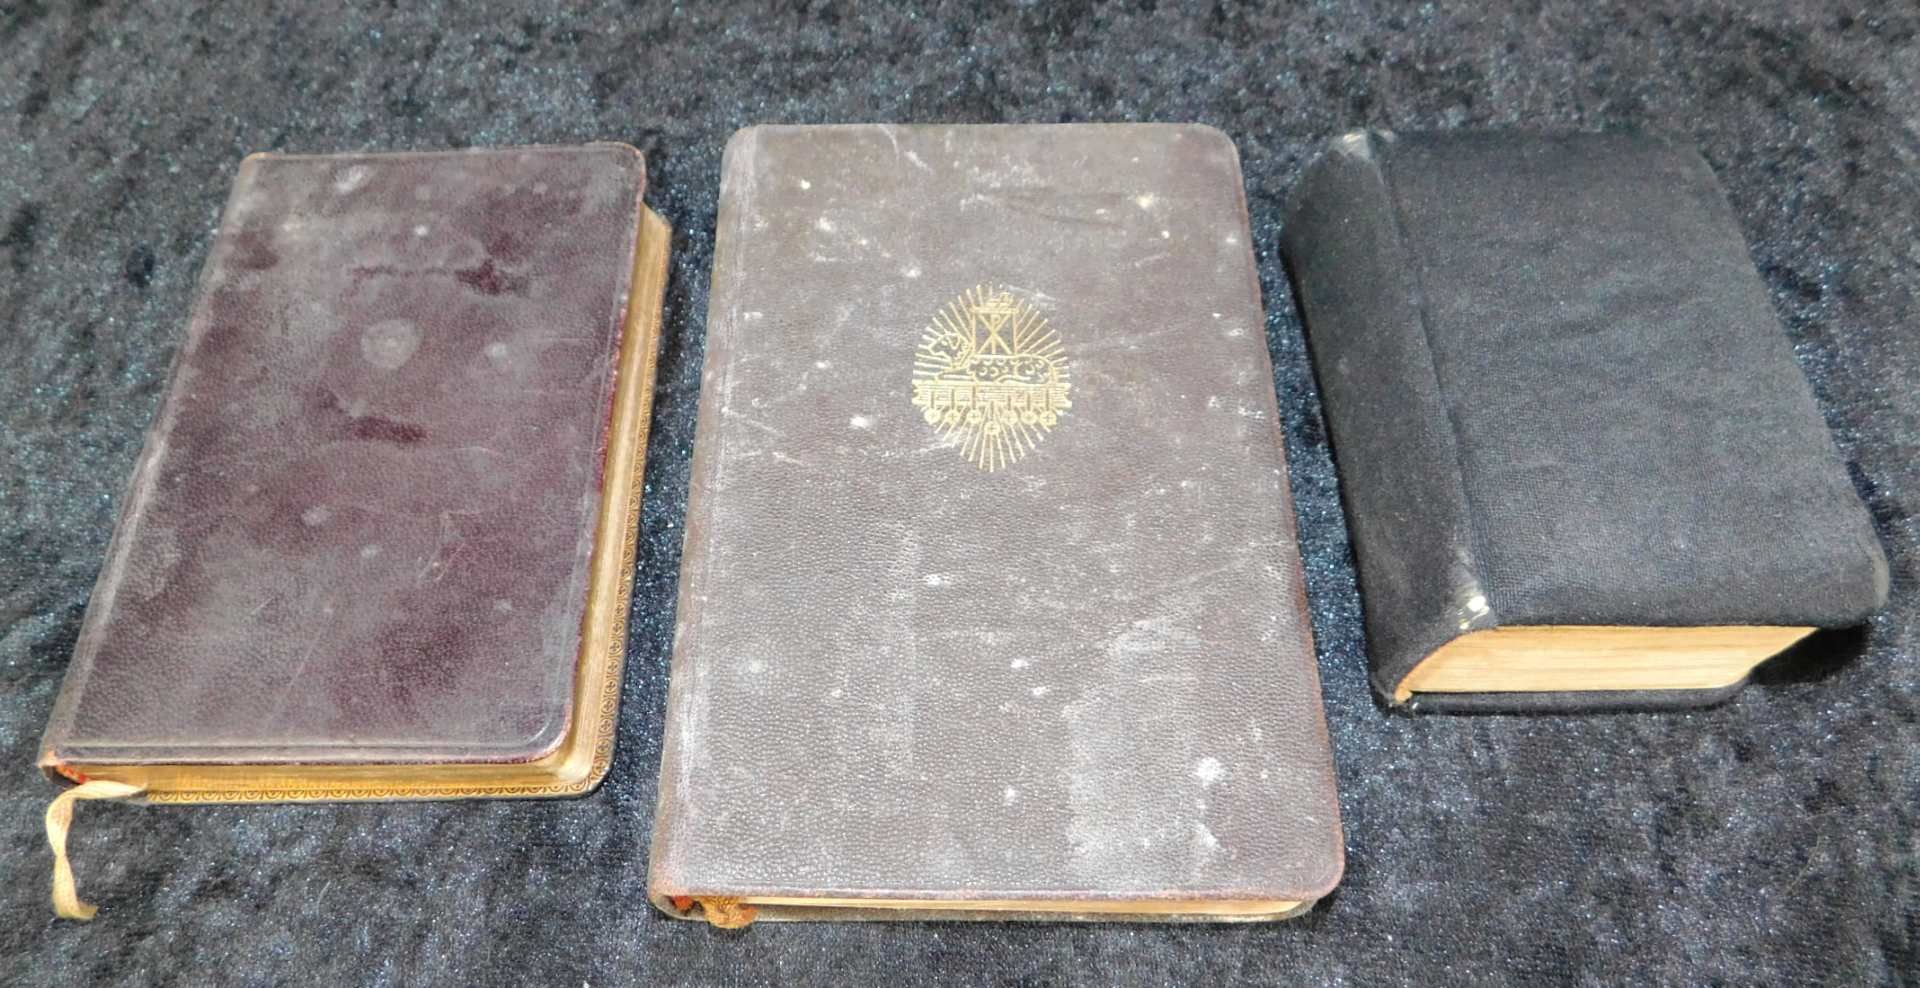 3 Gebetbücher, Nachf. Christi, 1912, Gebet u. gesangbuch Erzbistum Köln, 1935, Kath. Gebetbuch